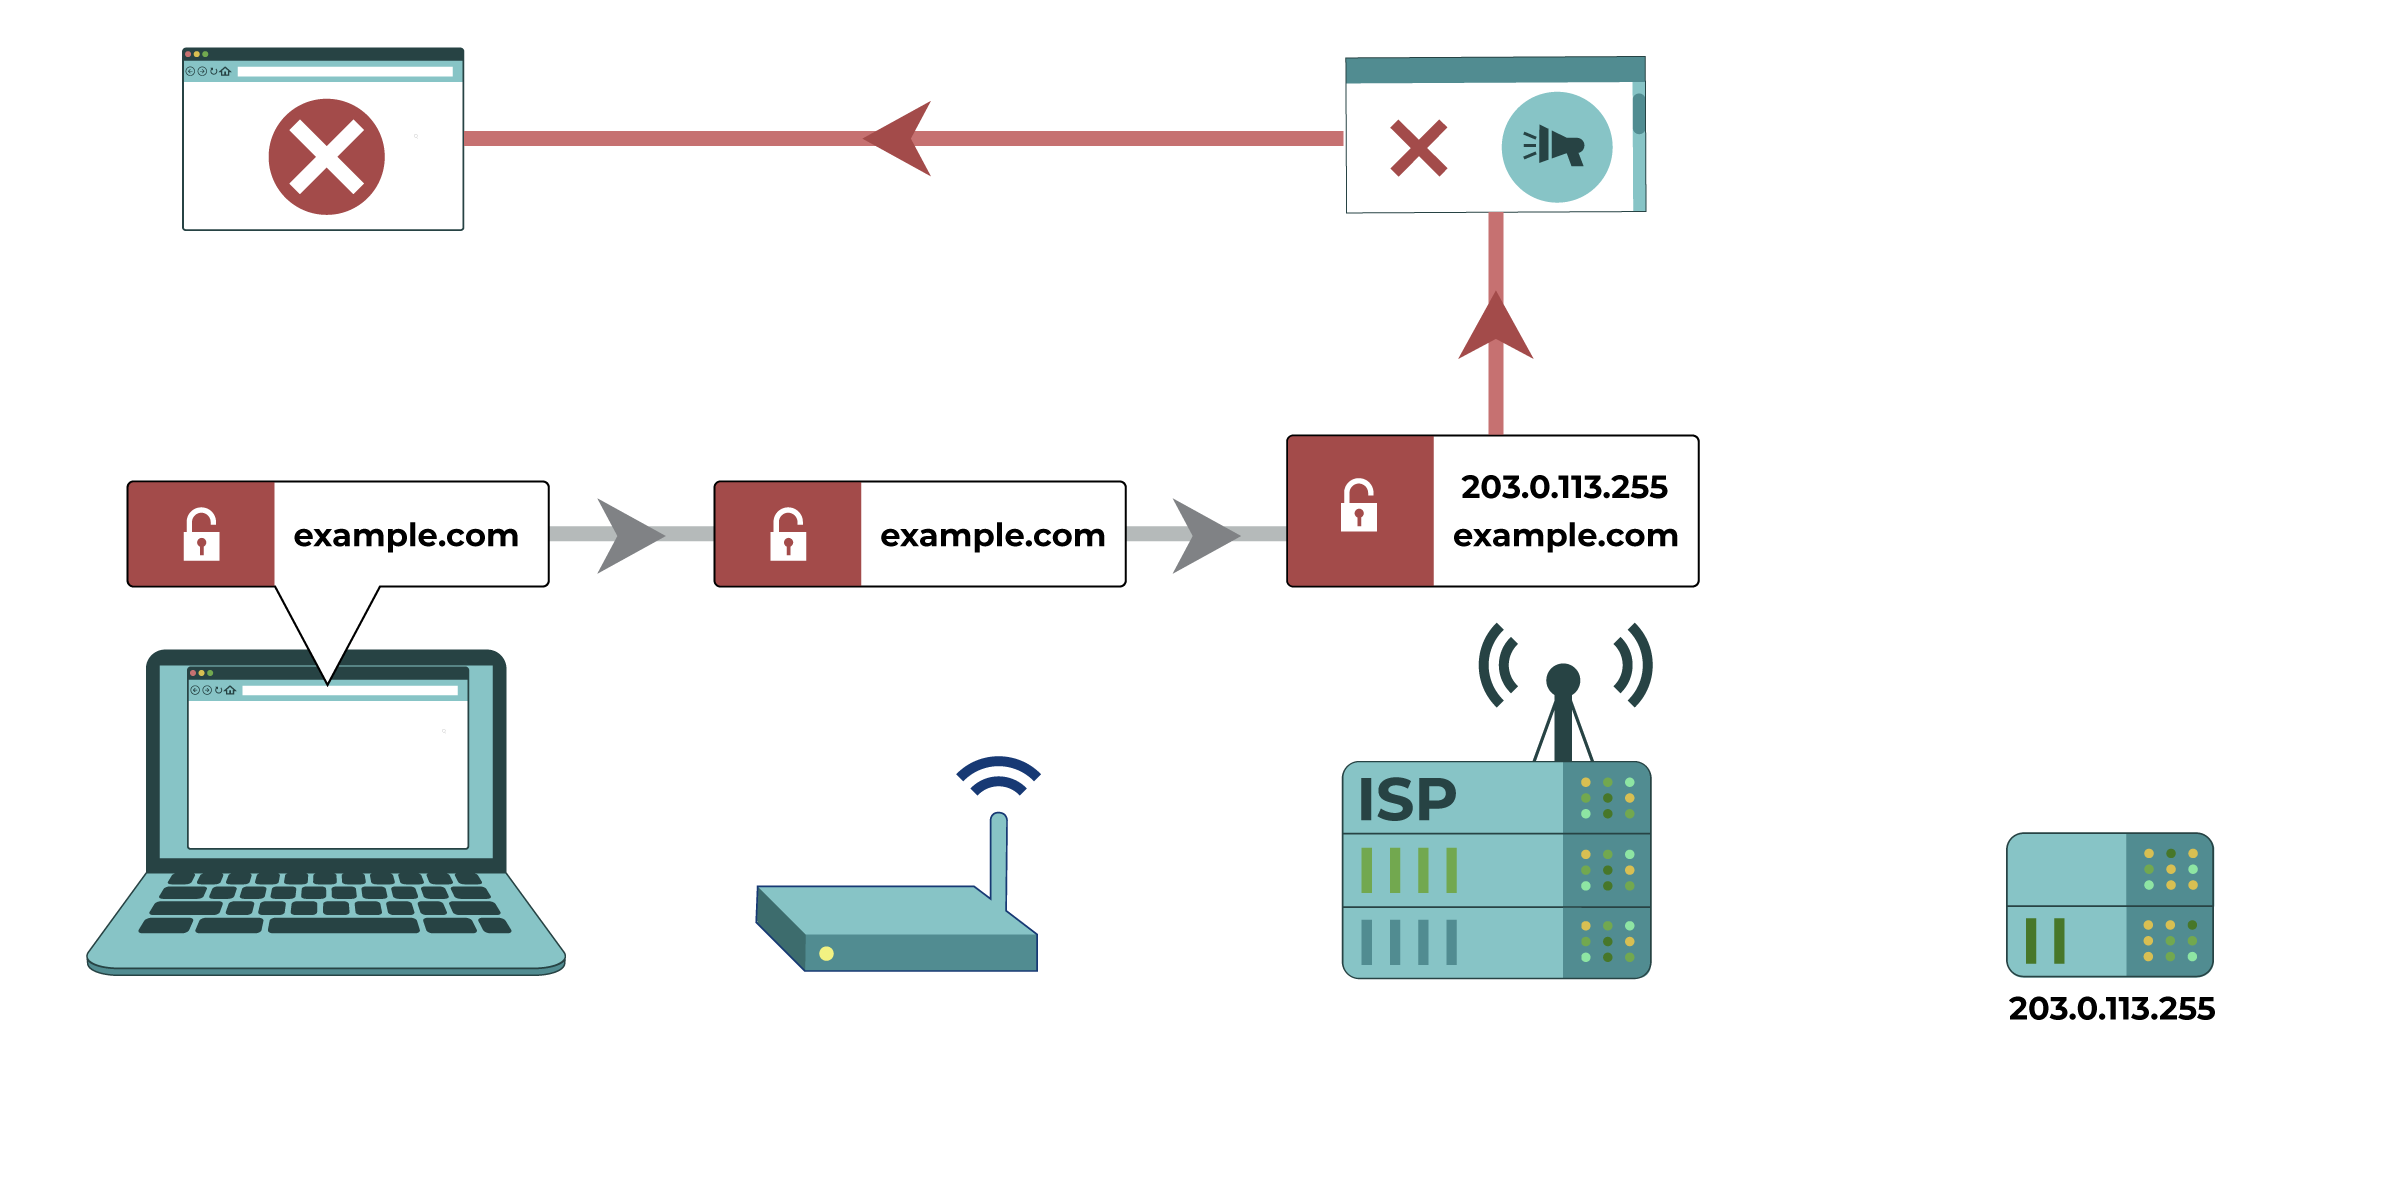 En una conexión a un sitio web no codificado, un proveedor de servicios de Internet (ISP) puede comprobar el contenido de un sitio comparándolo con los tipos de contenido bloqueados. En este ejemplo, la mención de la libertad de expresión conduce a un bloqueo automático de un sitio web.